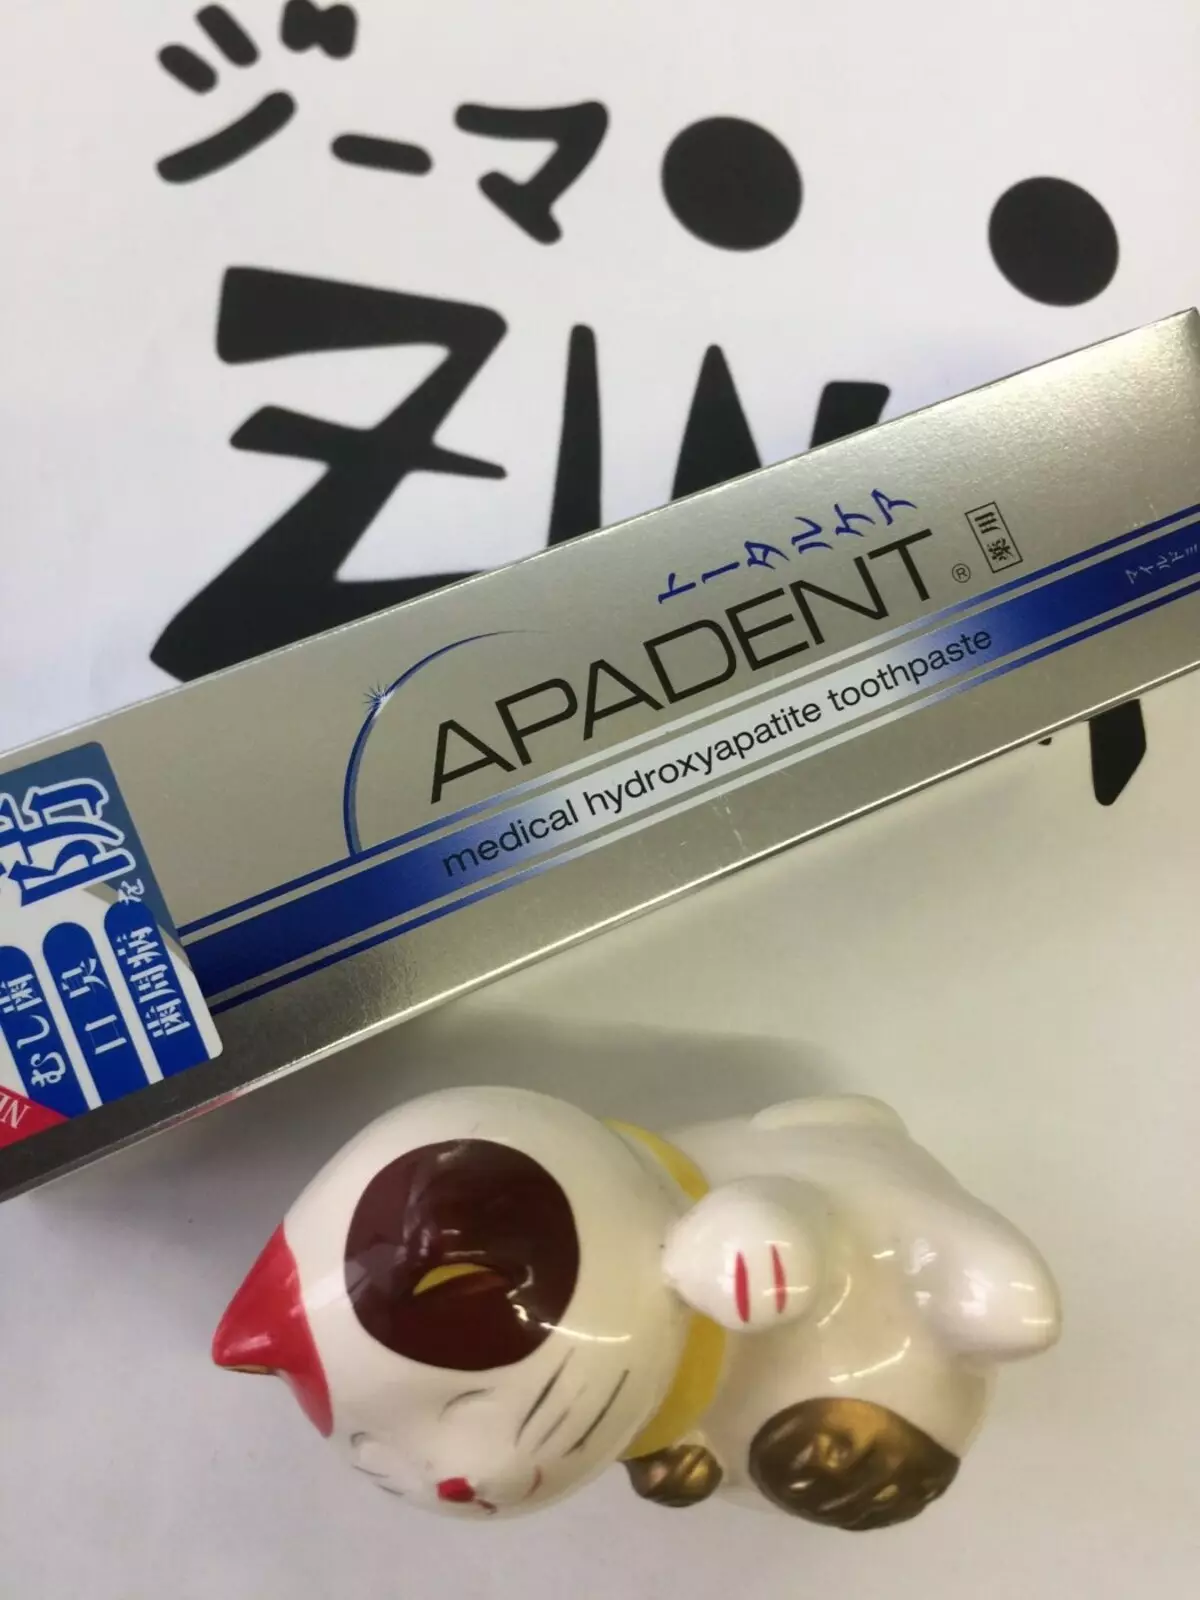 Apadent-dentifricio Apadent: bambini per bambini e cura totale per adulti in confezione blu, riminilizzazione della pasta giapponese e altro, composizione e recensioni 24058_8